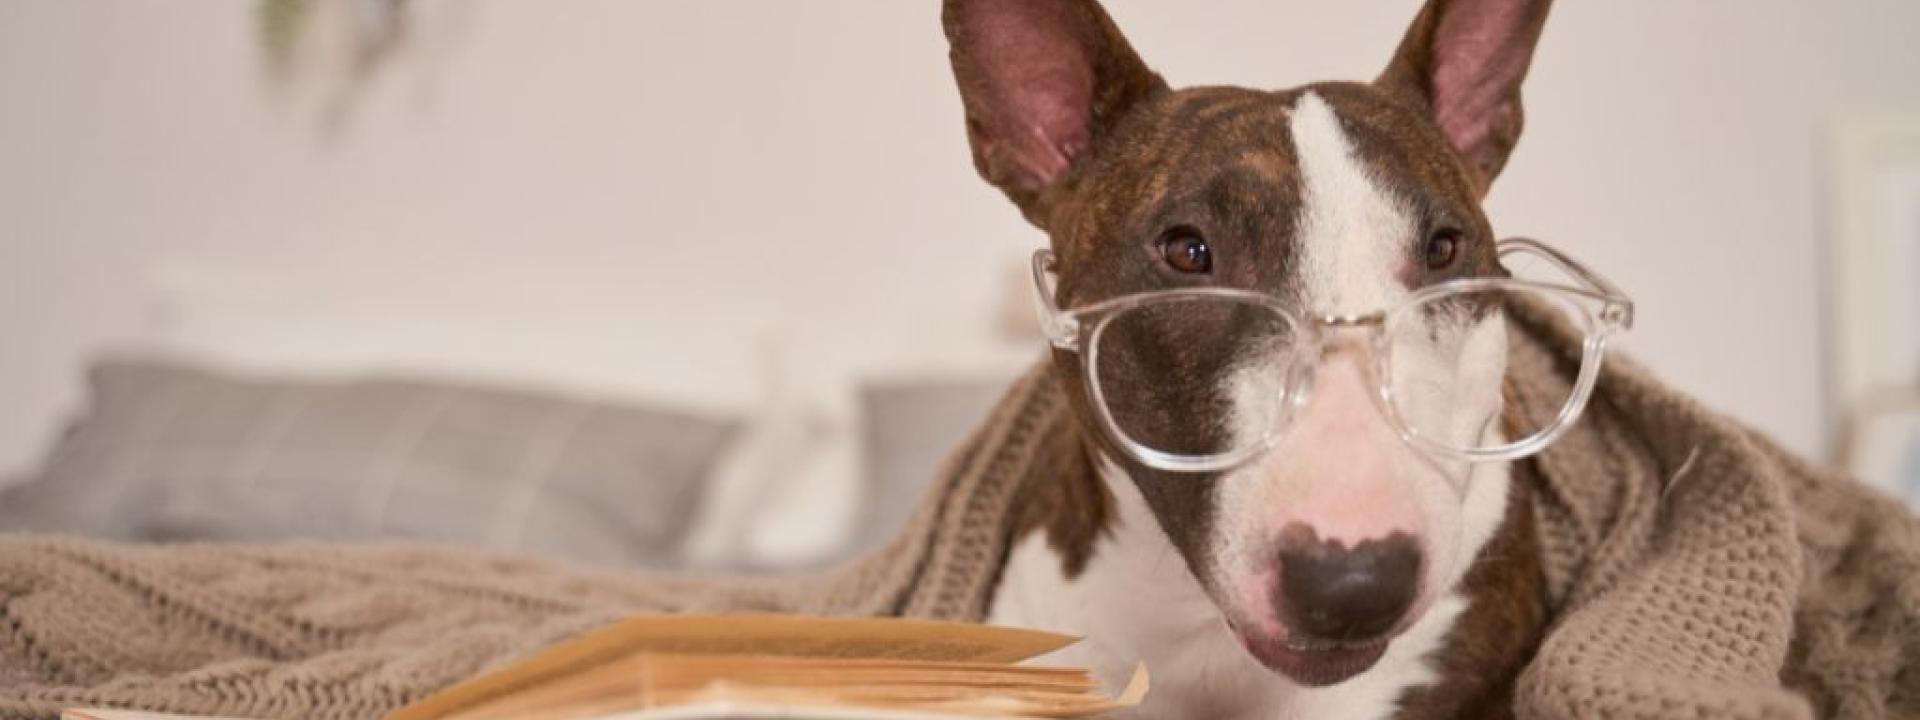 Bull Terrier wearing glasses